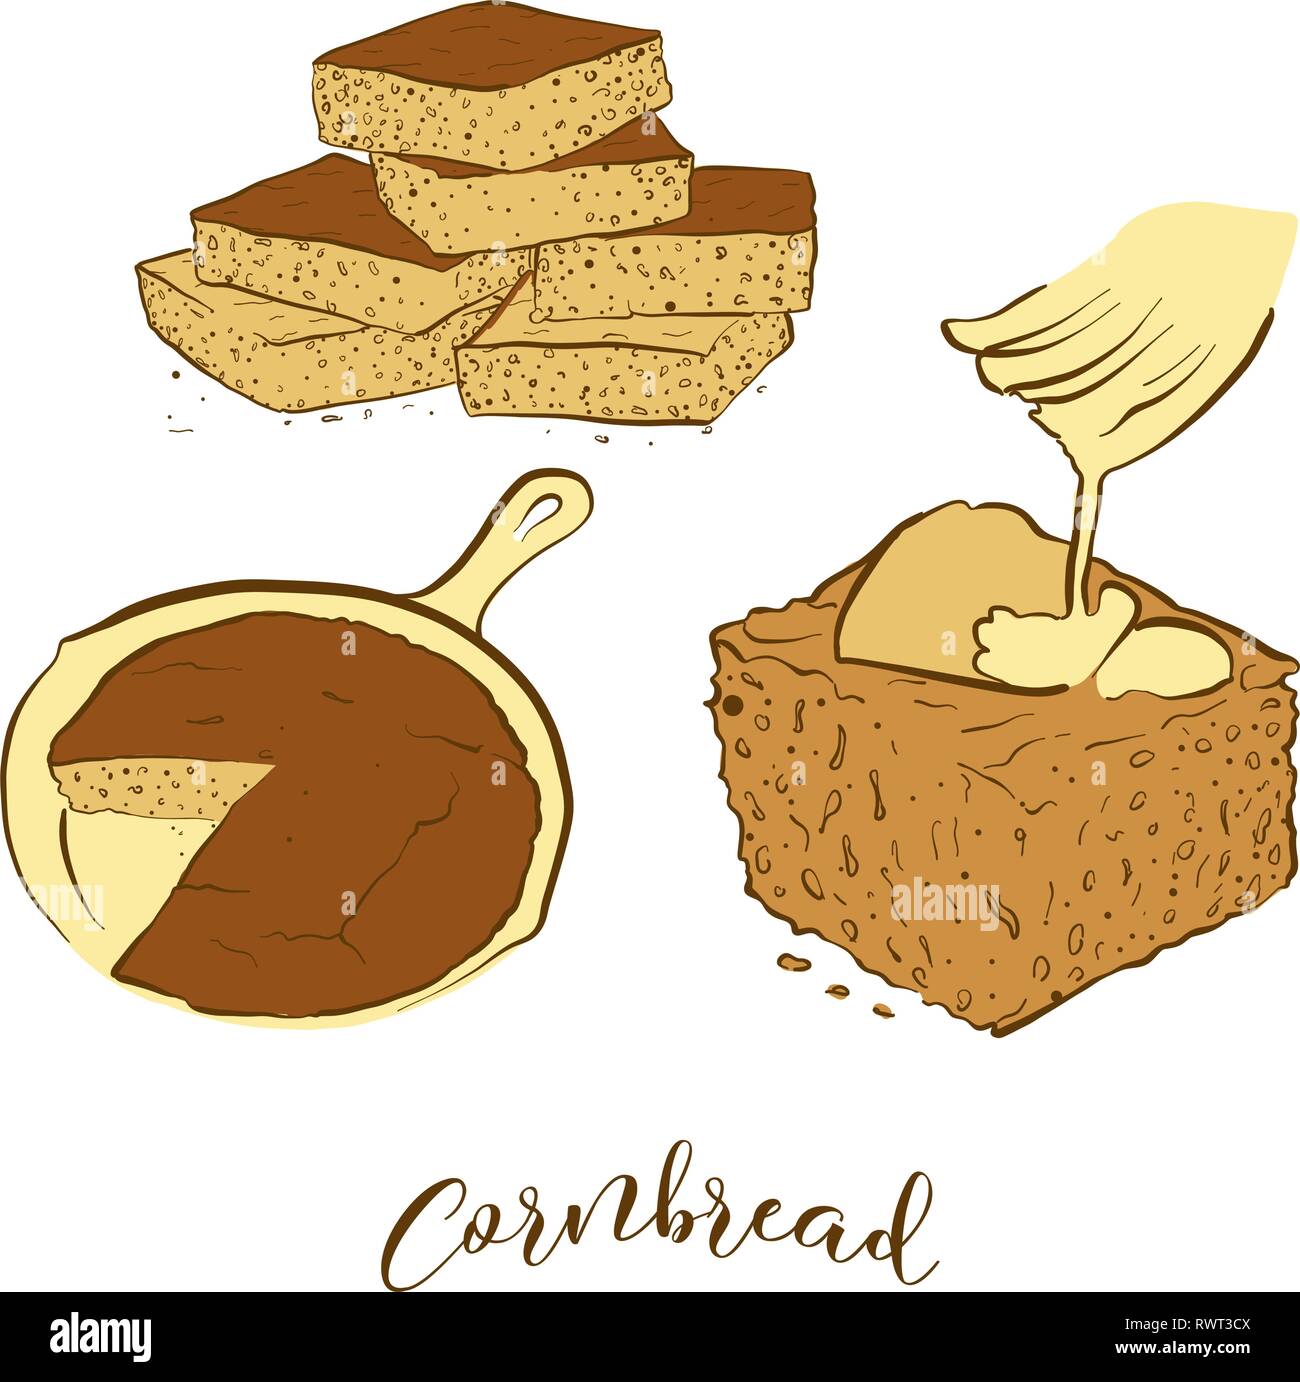 Farbige Skizzen der Cornbread Brot. Vektor Zeichnung der Cornbread Essen, in der Regel in Amerika bekannt. Farbige Brot Abbildung Serie. Stock Vektor